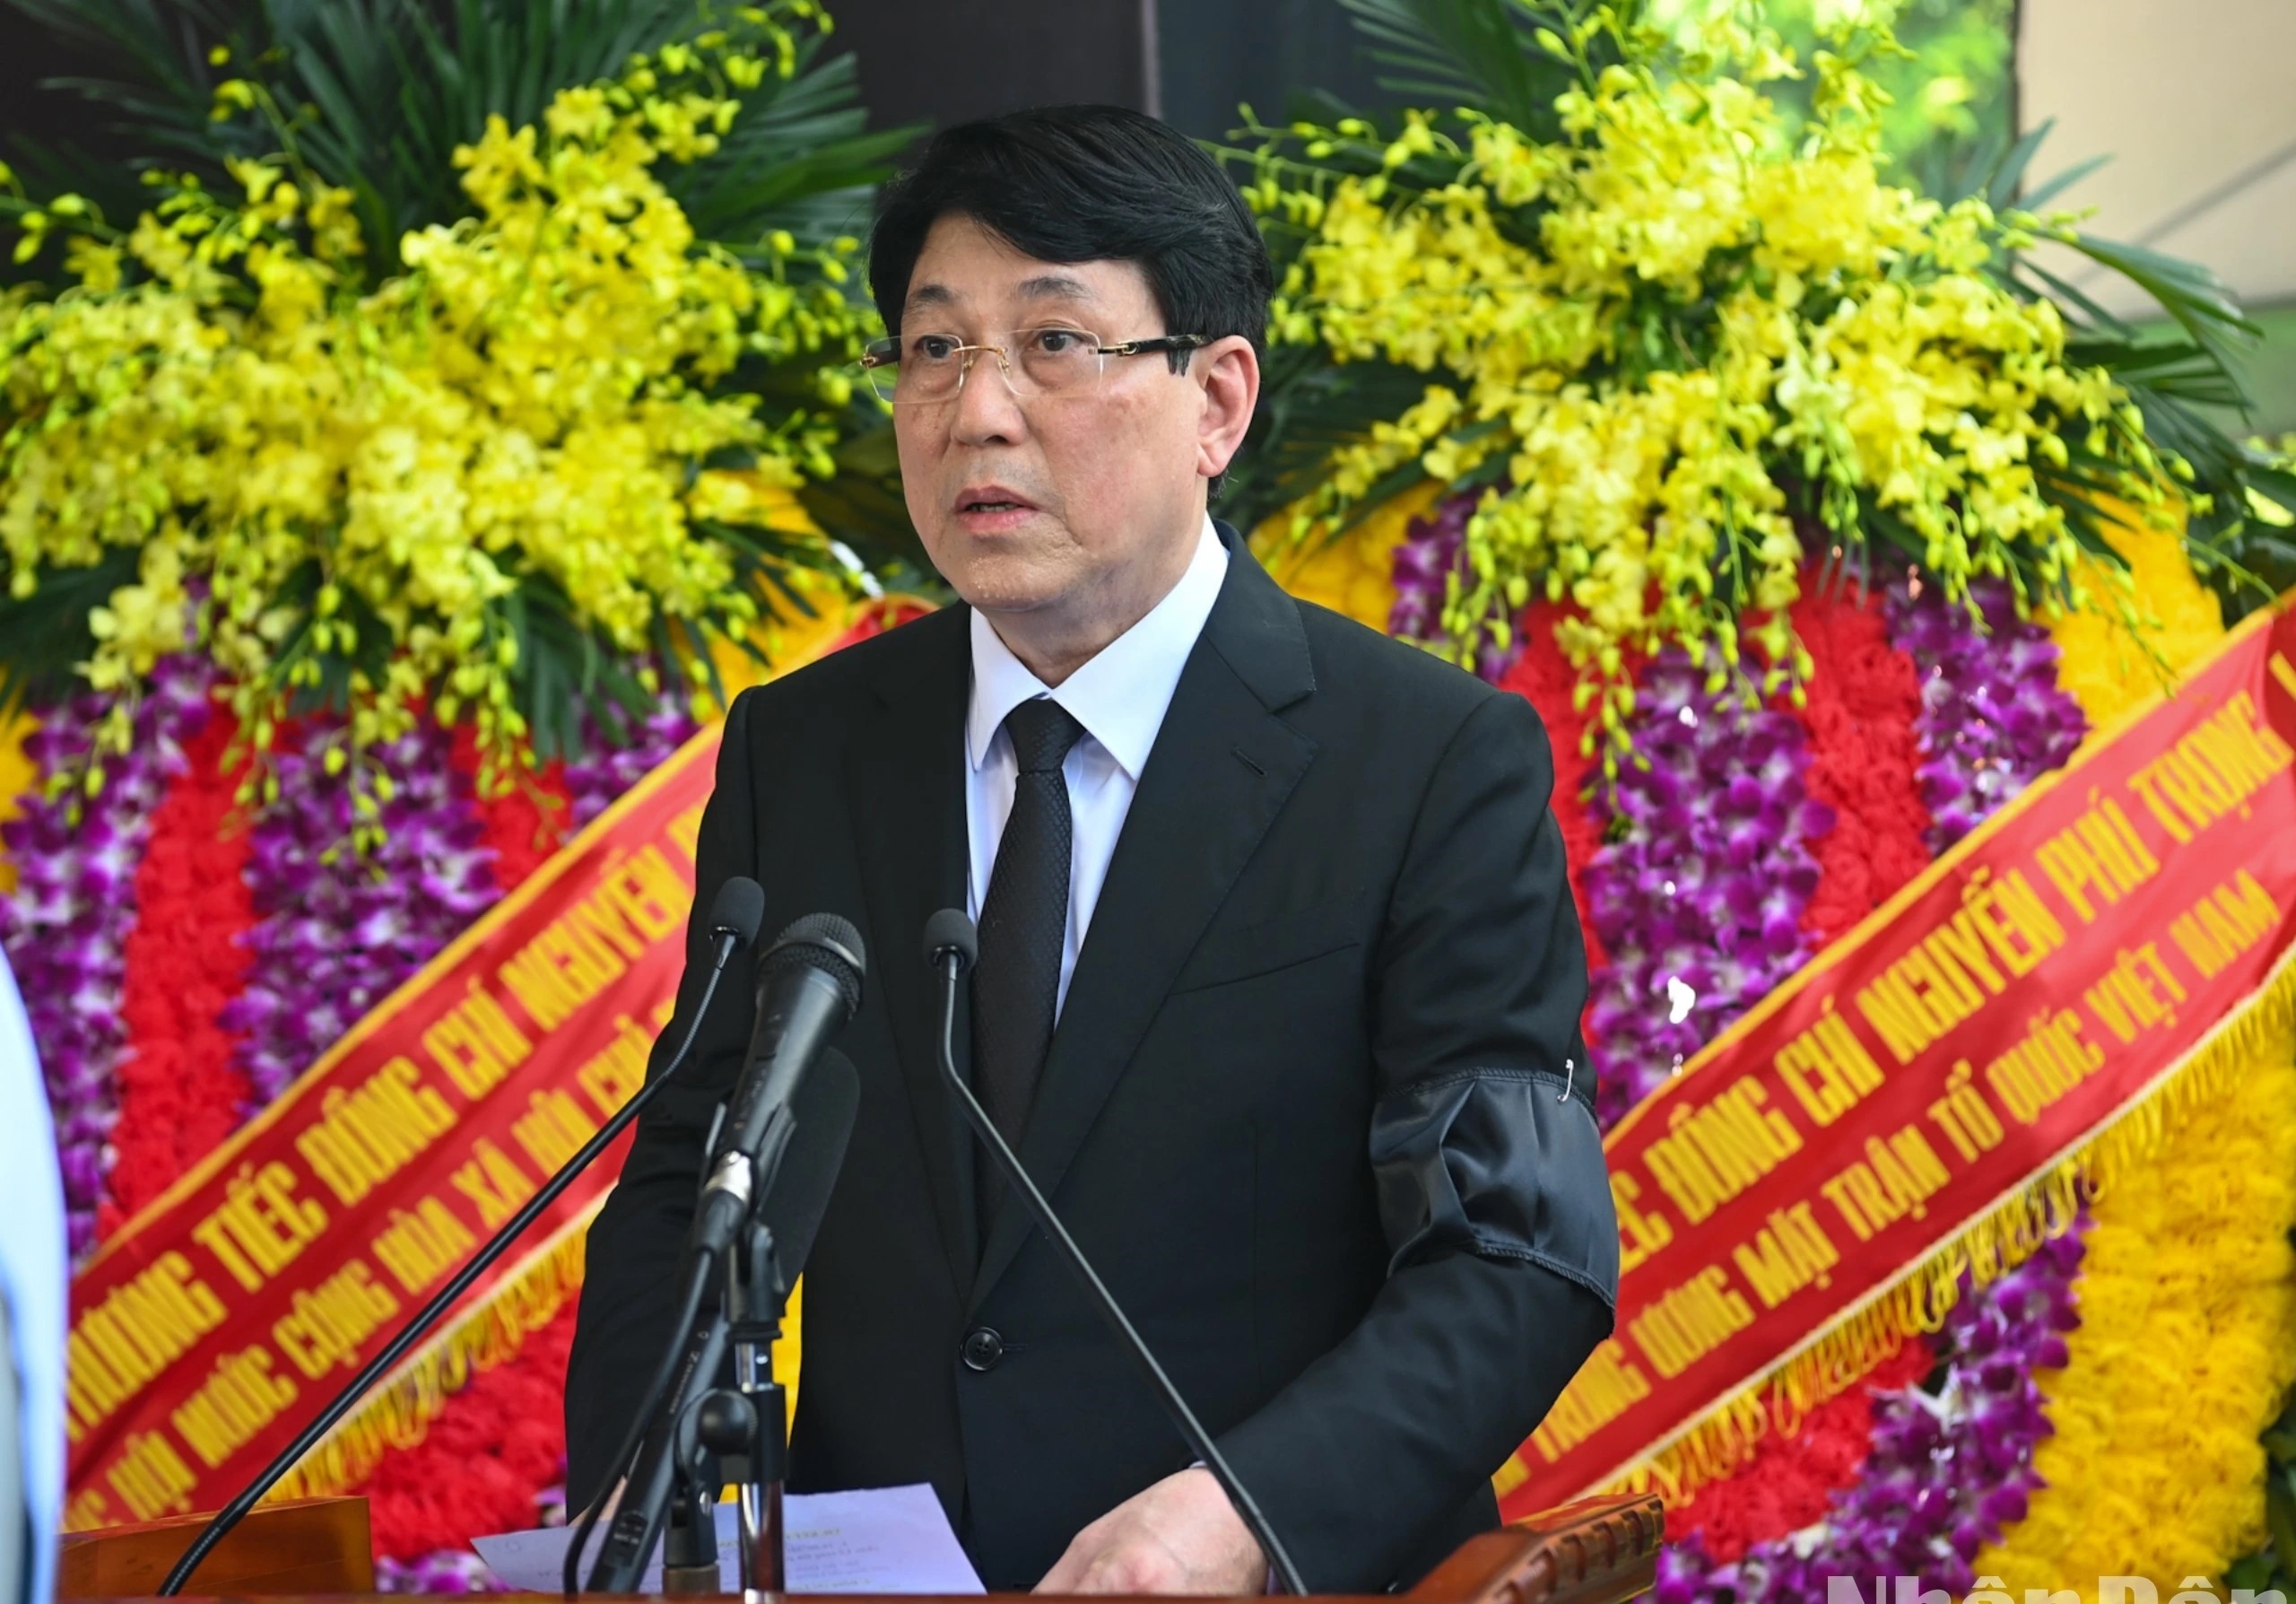 Nhà tư tưởng Nguyễn Phú Trọng, ngọn cờ lý luận của Đảng đã làm sáng tỏ lý luận về chủ nghĩa xã hội và con đường đi lên chủ nghĩa xã hội ở Việt Nam